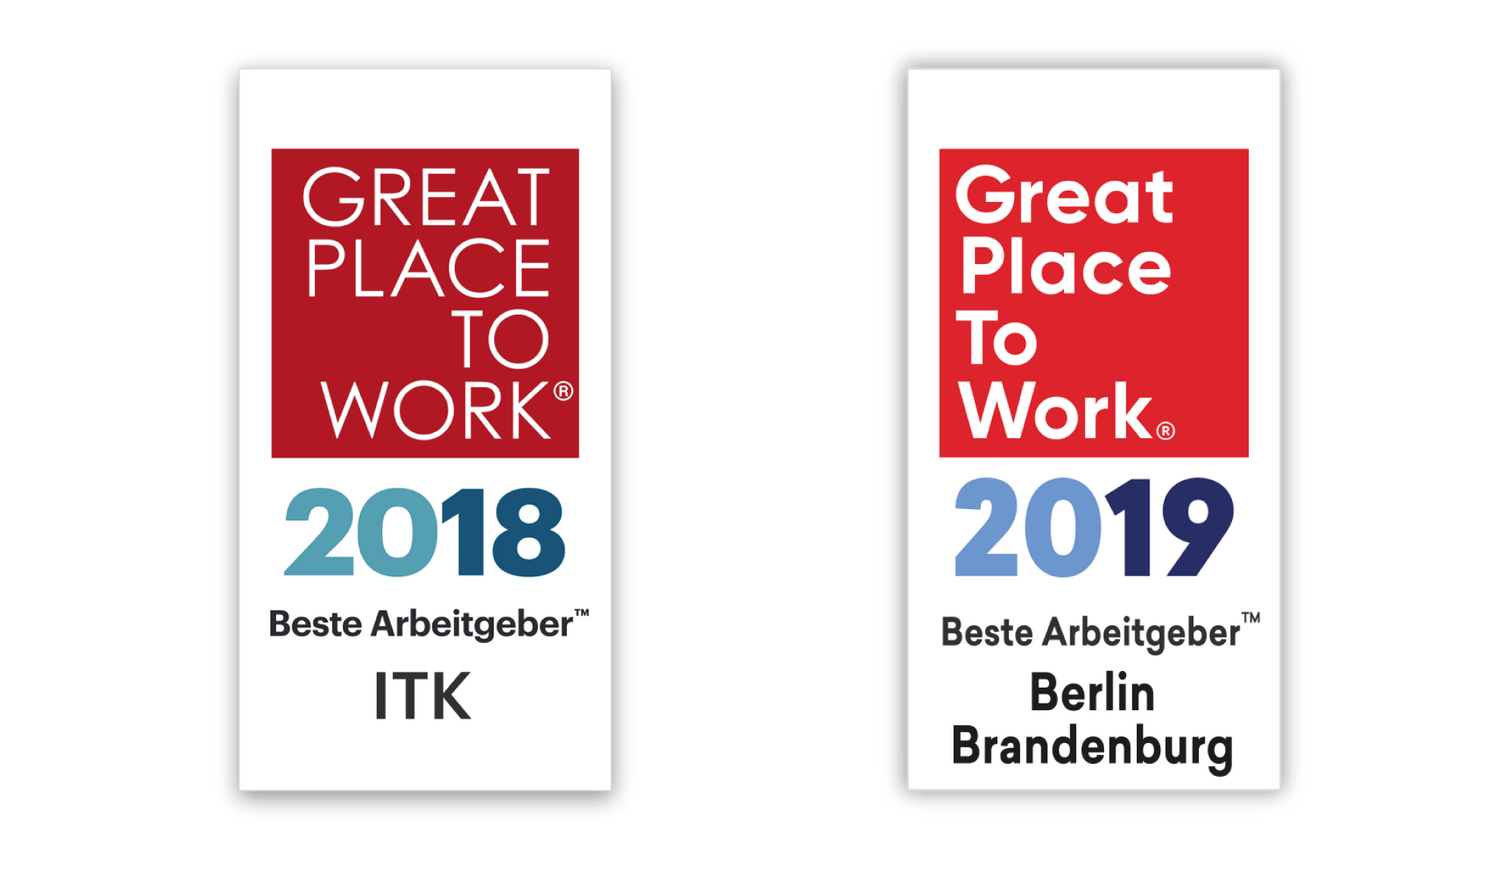 orgavision trägt das Sigel "Great Place to Work" im Jahr 2018 und 2019